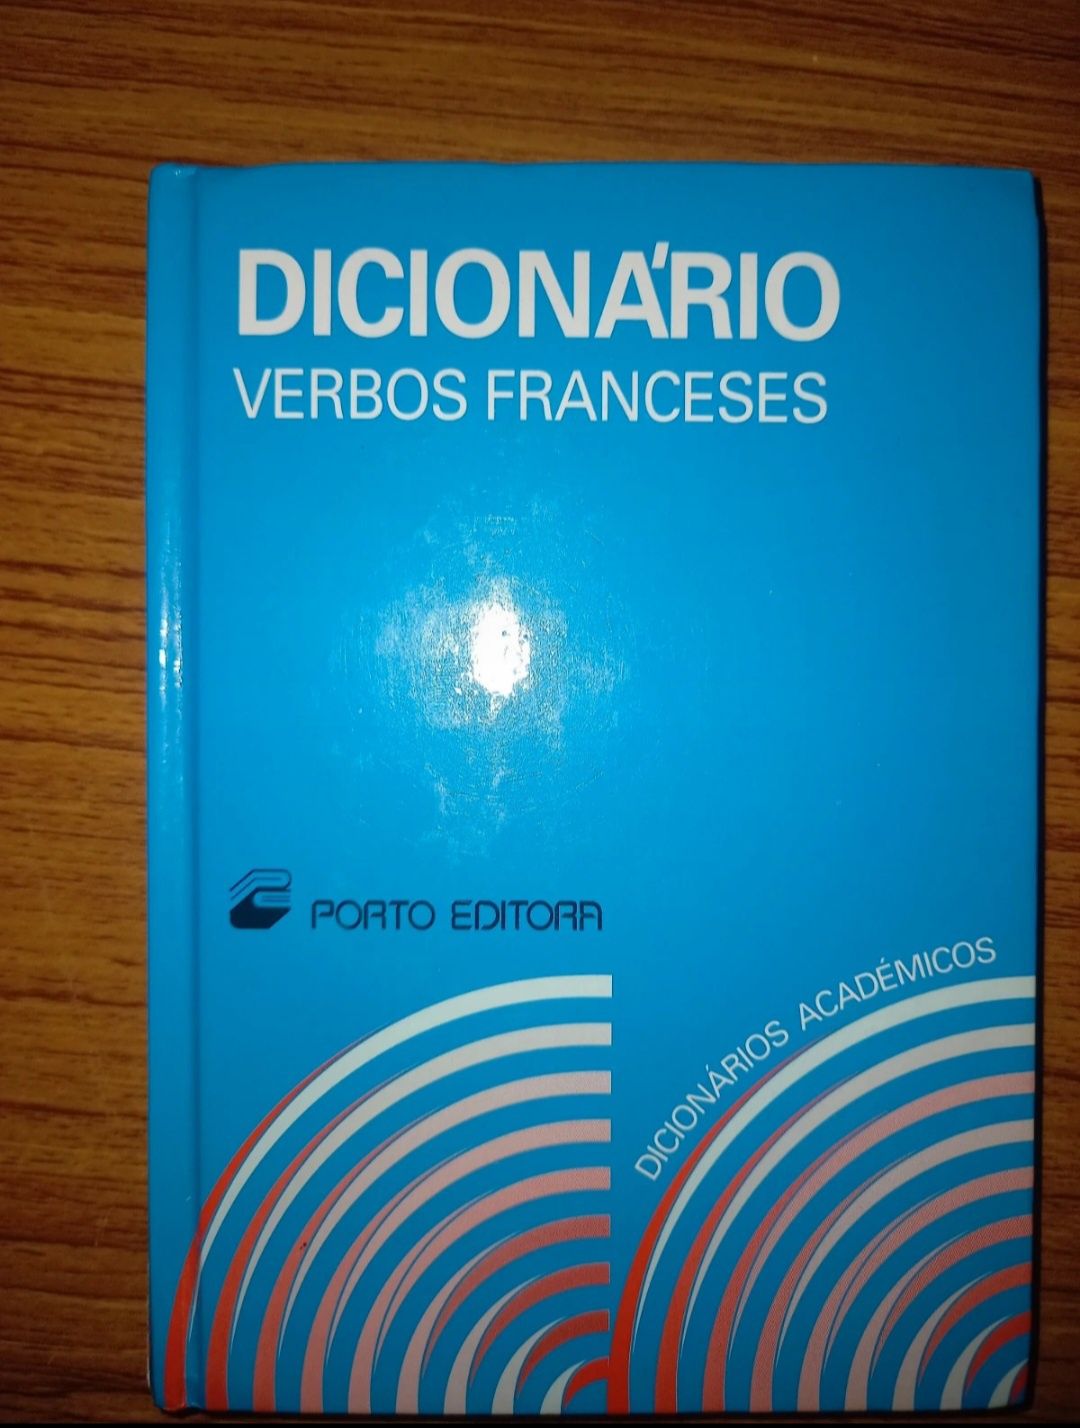 Dicionário de verbos franceses